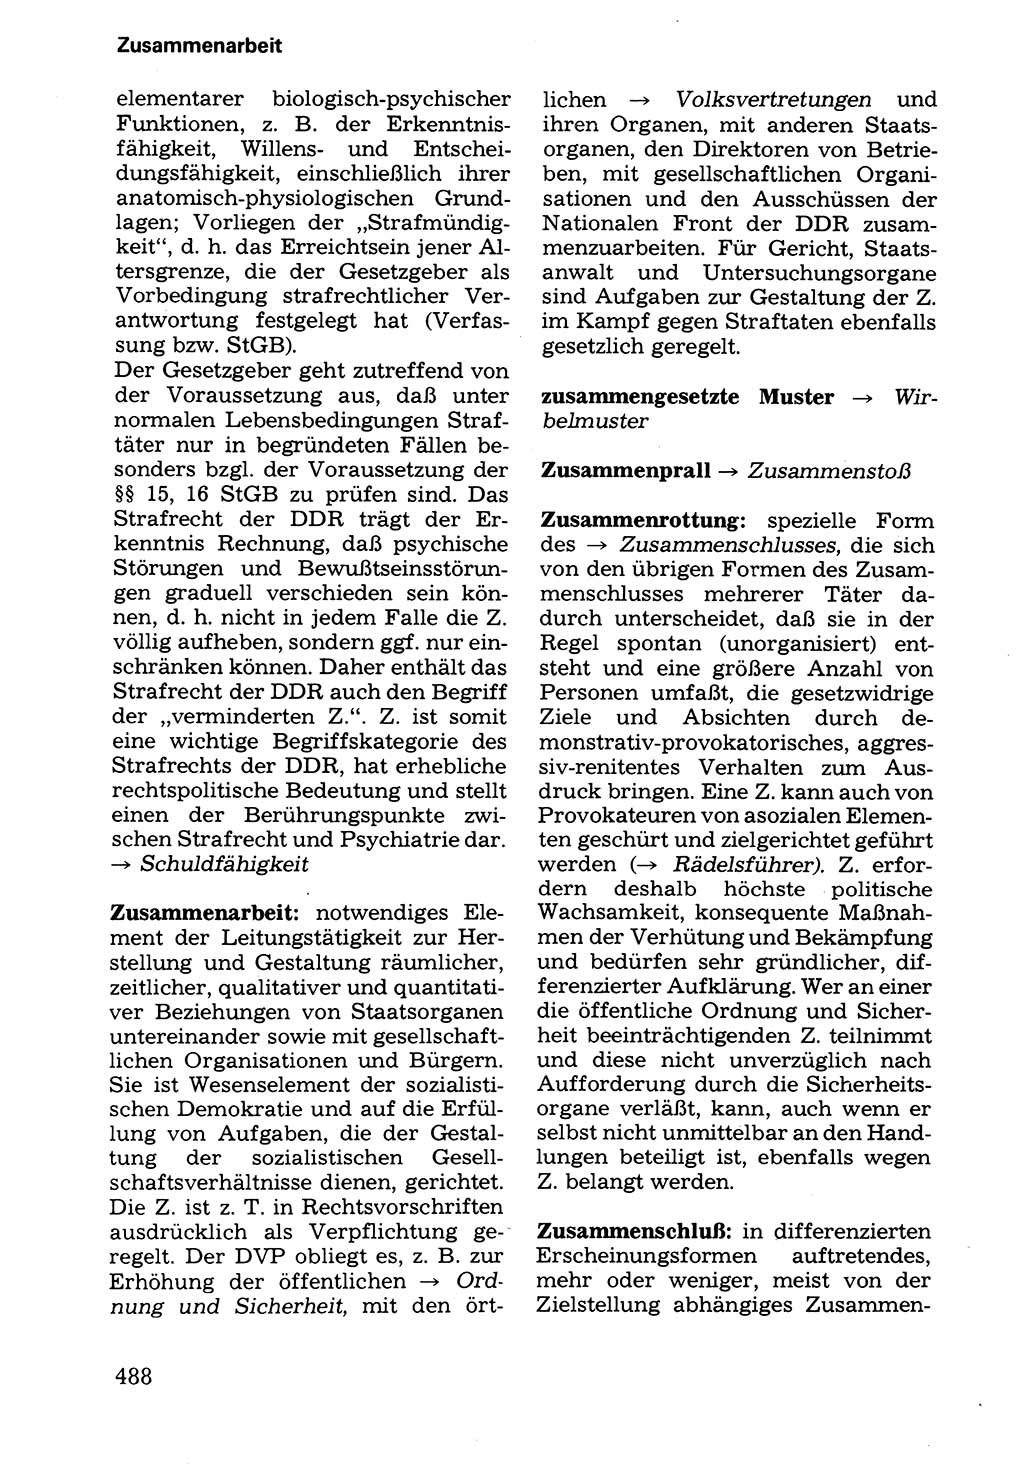 Wörterbuch der sozialistischen Kriminalistik [Deutsche Demokratische Republik (DDR)] 1981, Seite 488 (Wb. soz. Krim. DDR 1981, S. 488)